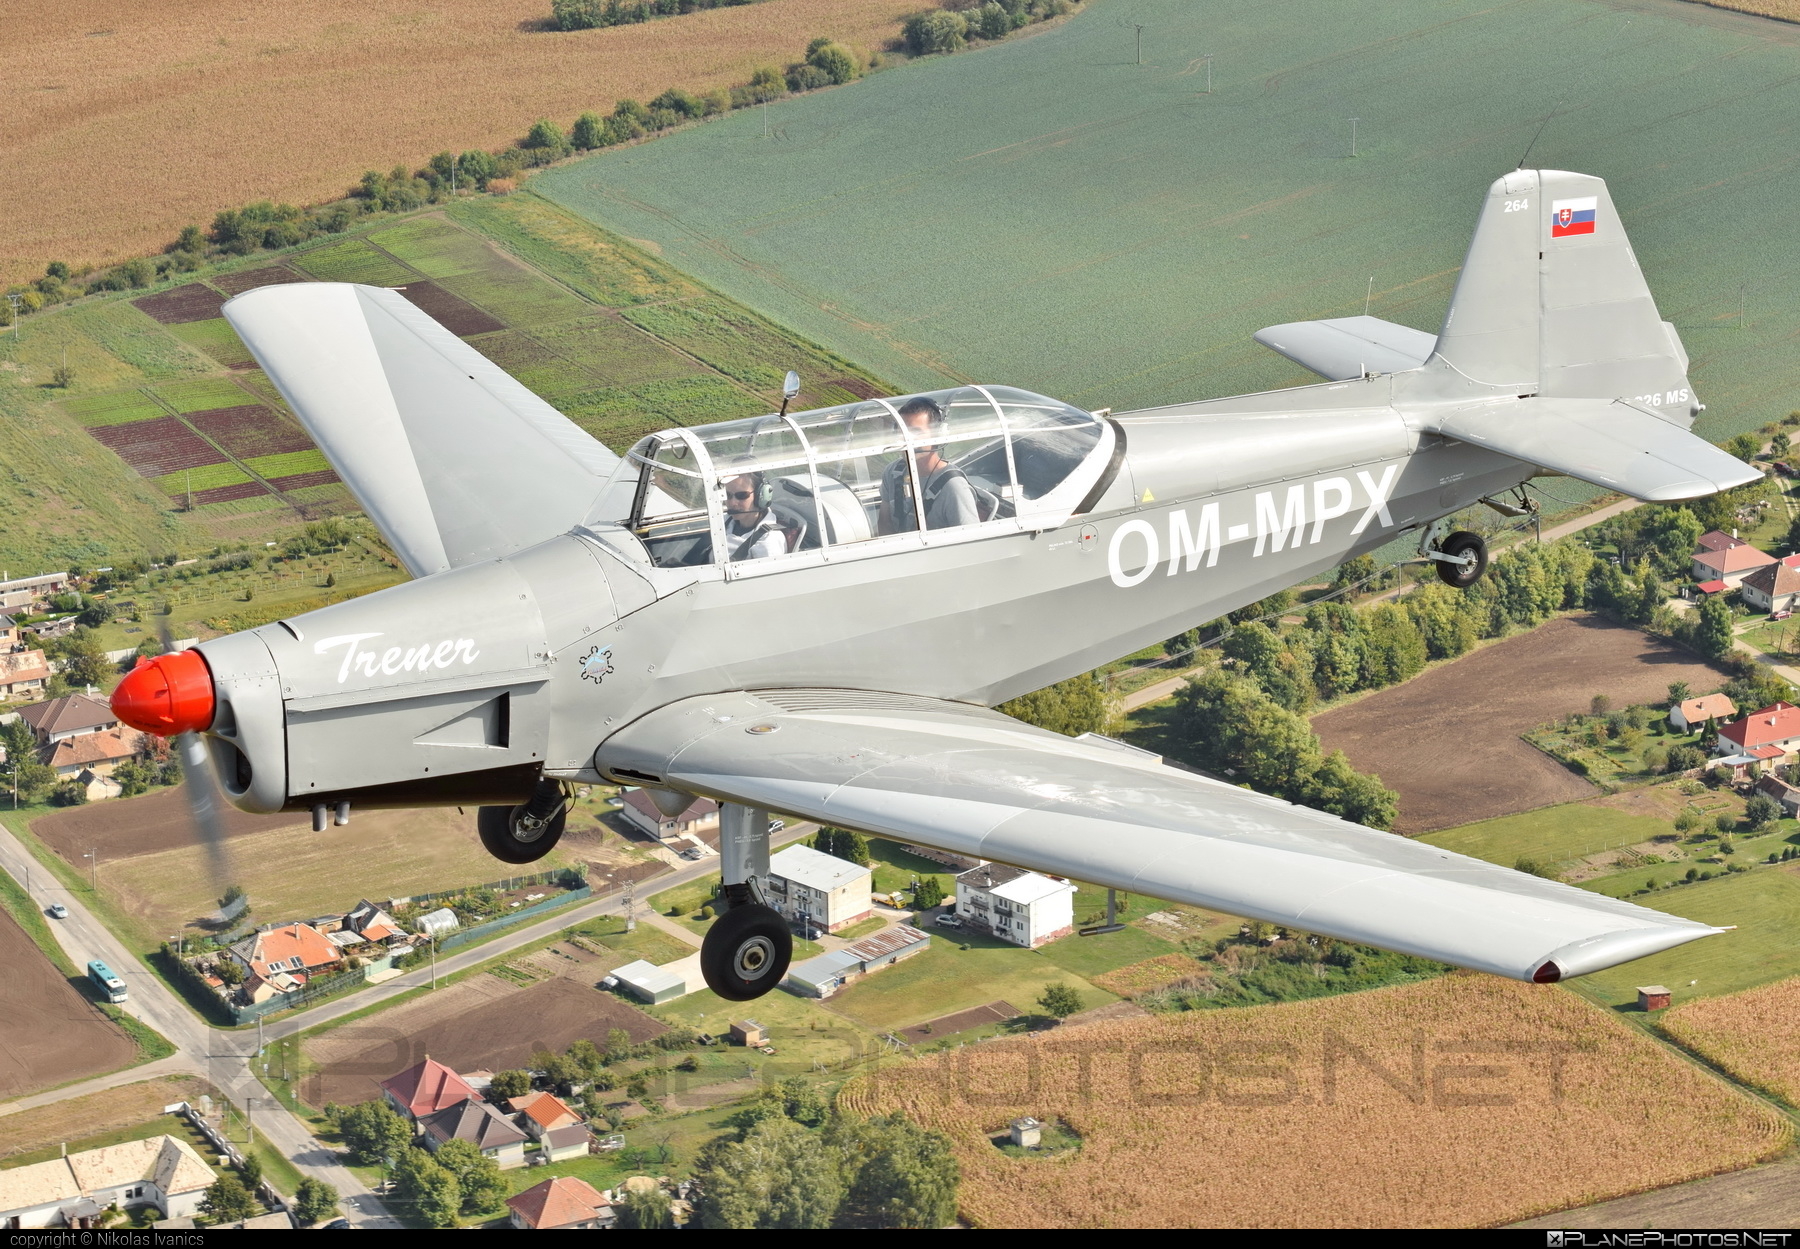 Zlin Z-226MS Trenér - OM-MPX operated by Aeroklub Nové Zámky #z226 #z226trener #zlin #zlin226 #zlintrener